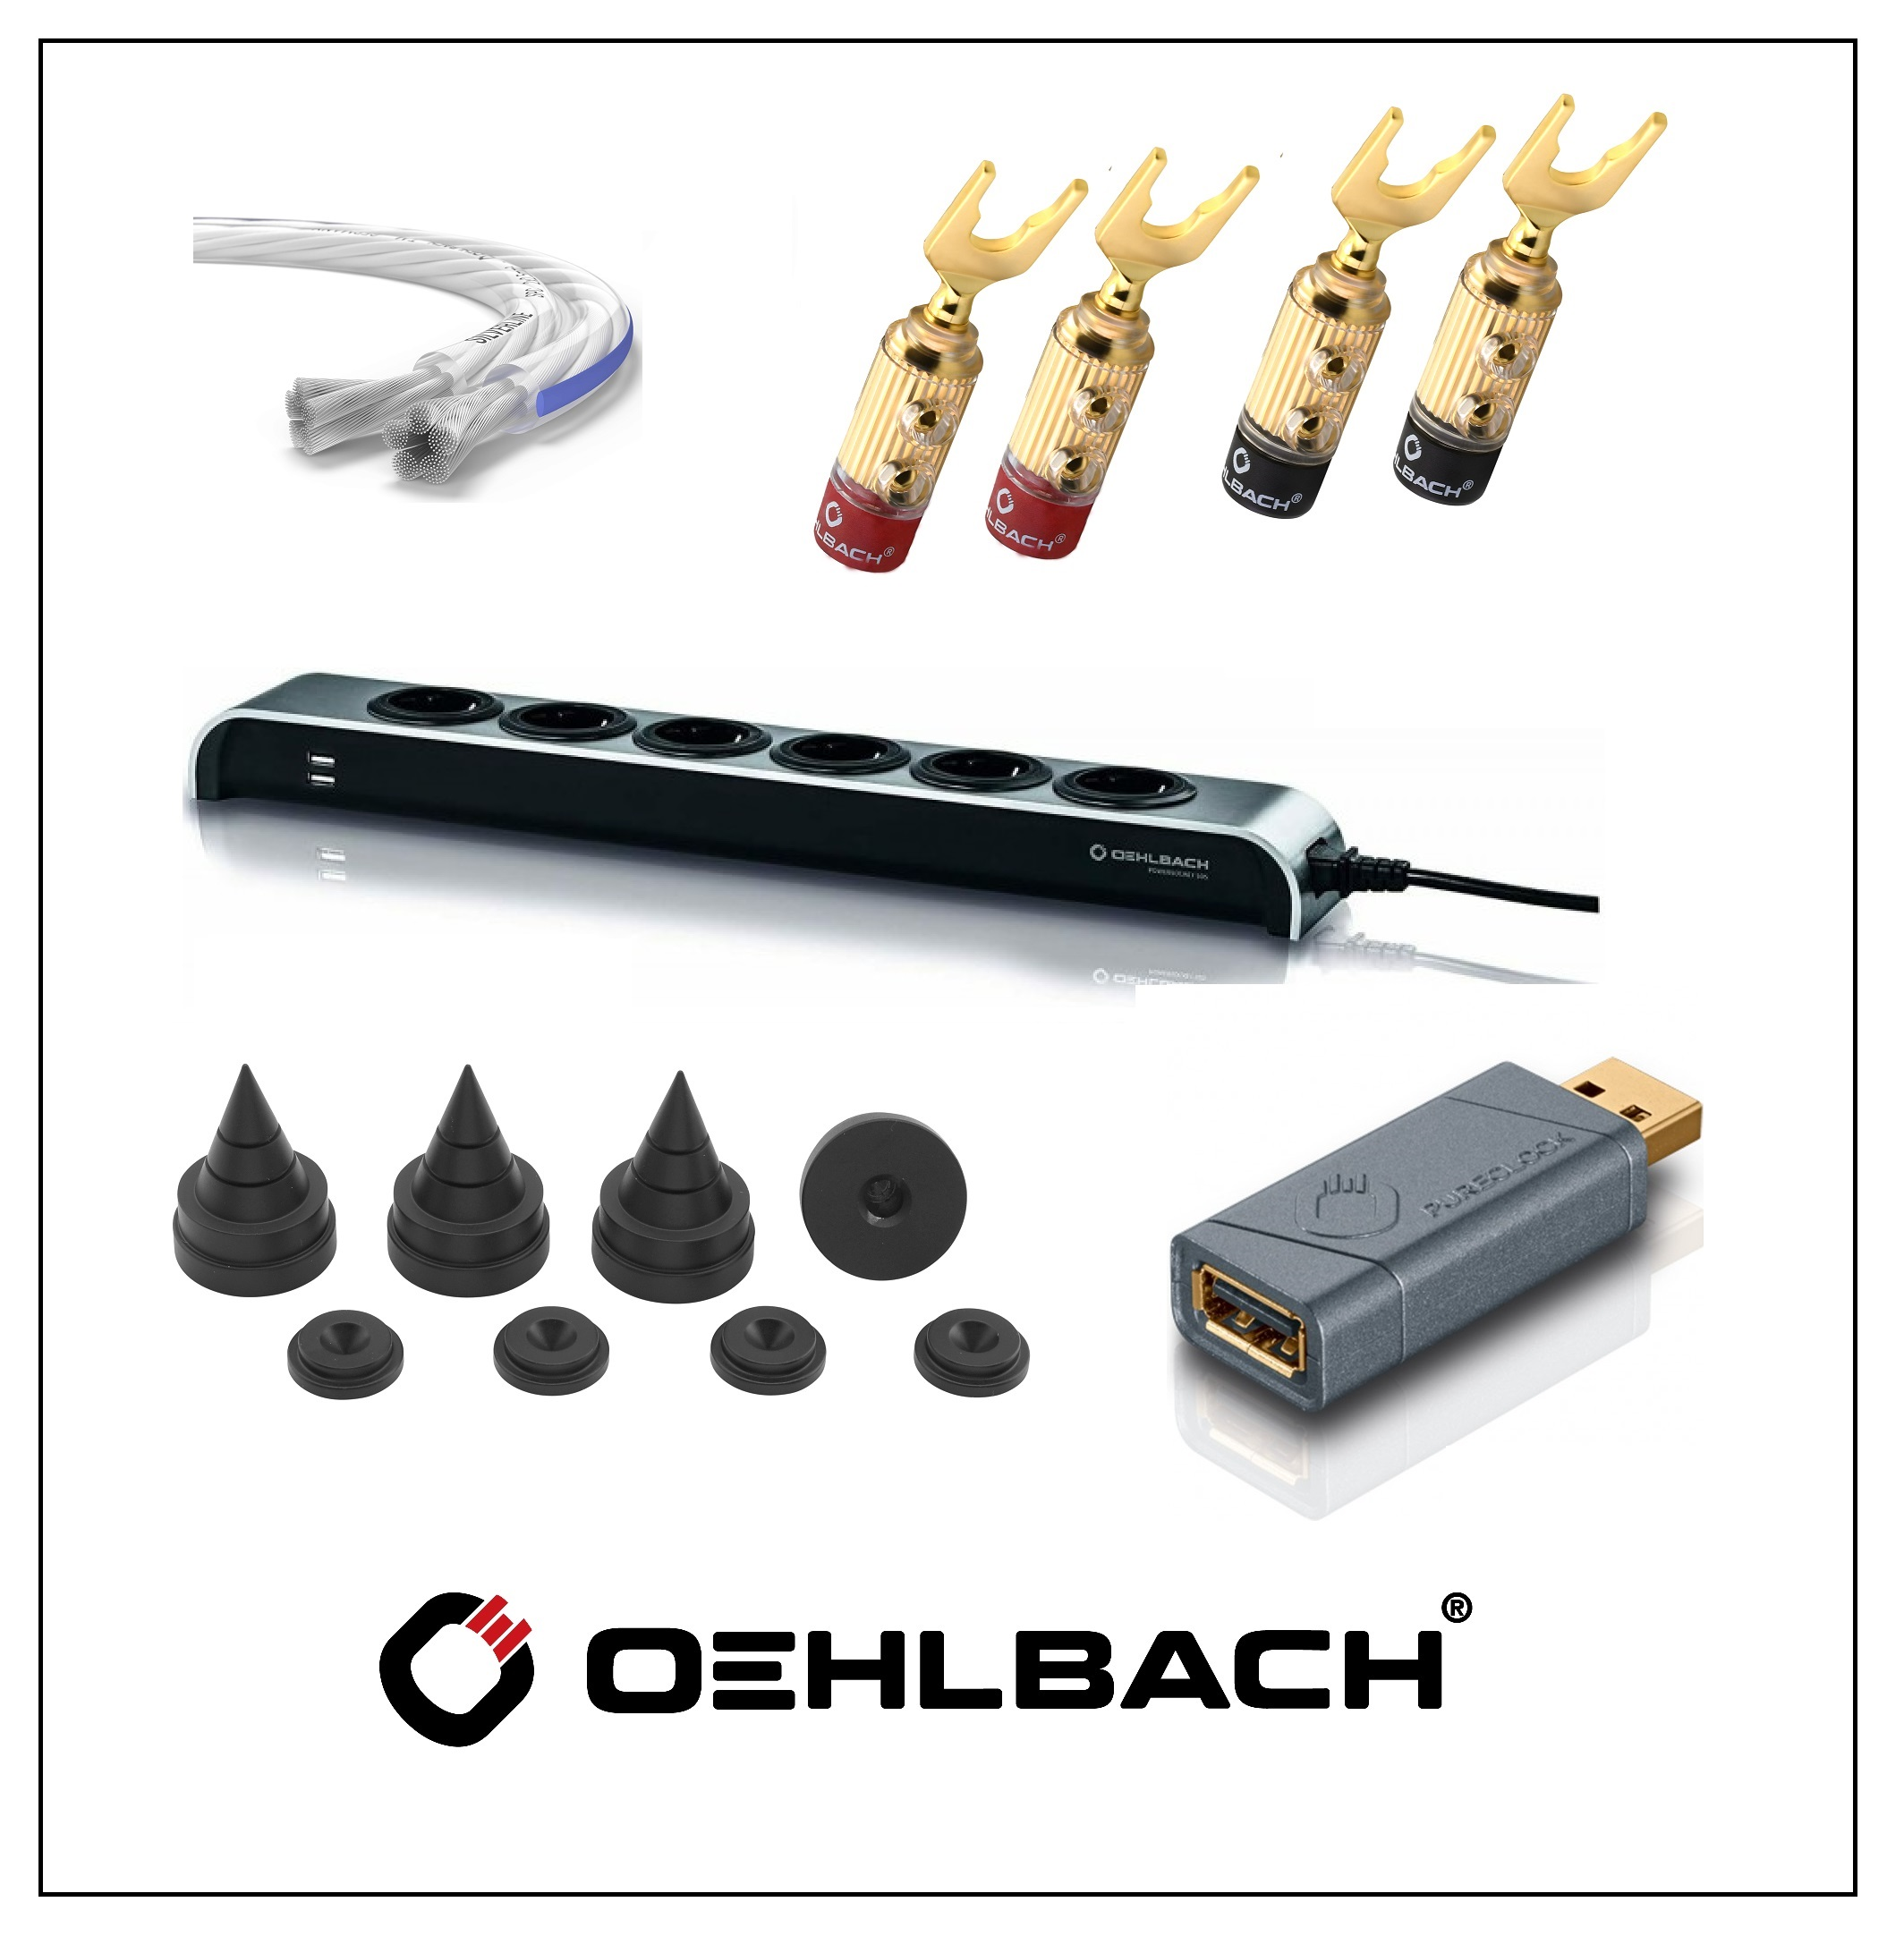 oehlbach prodotti2